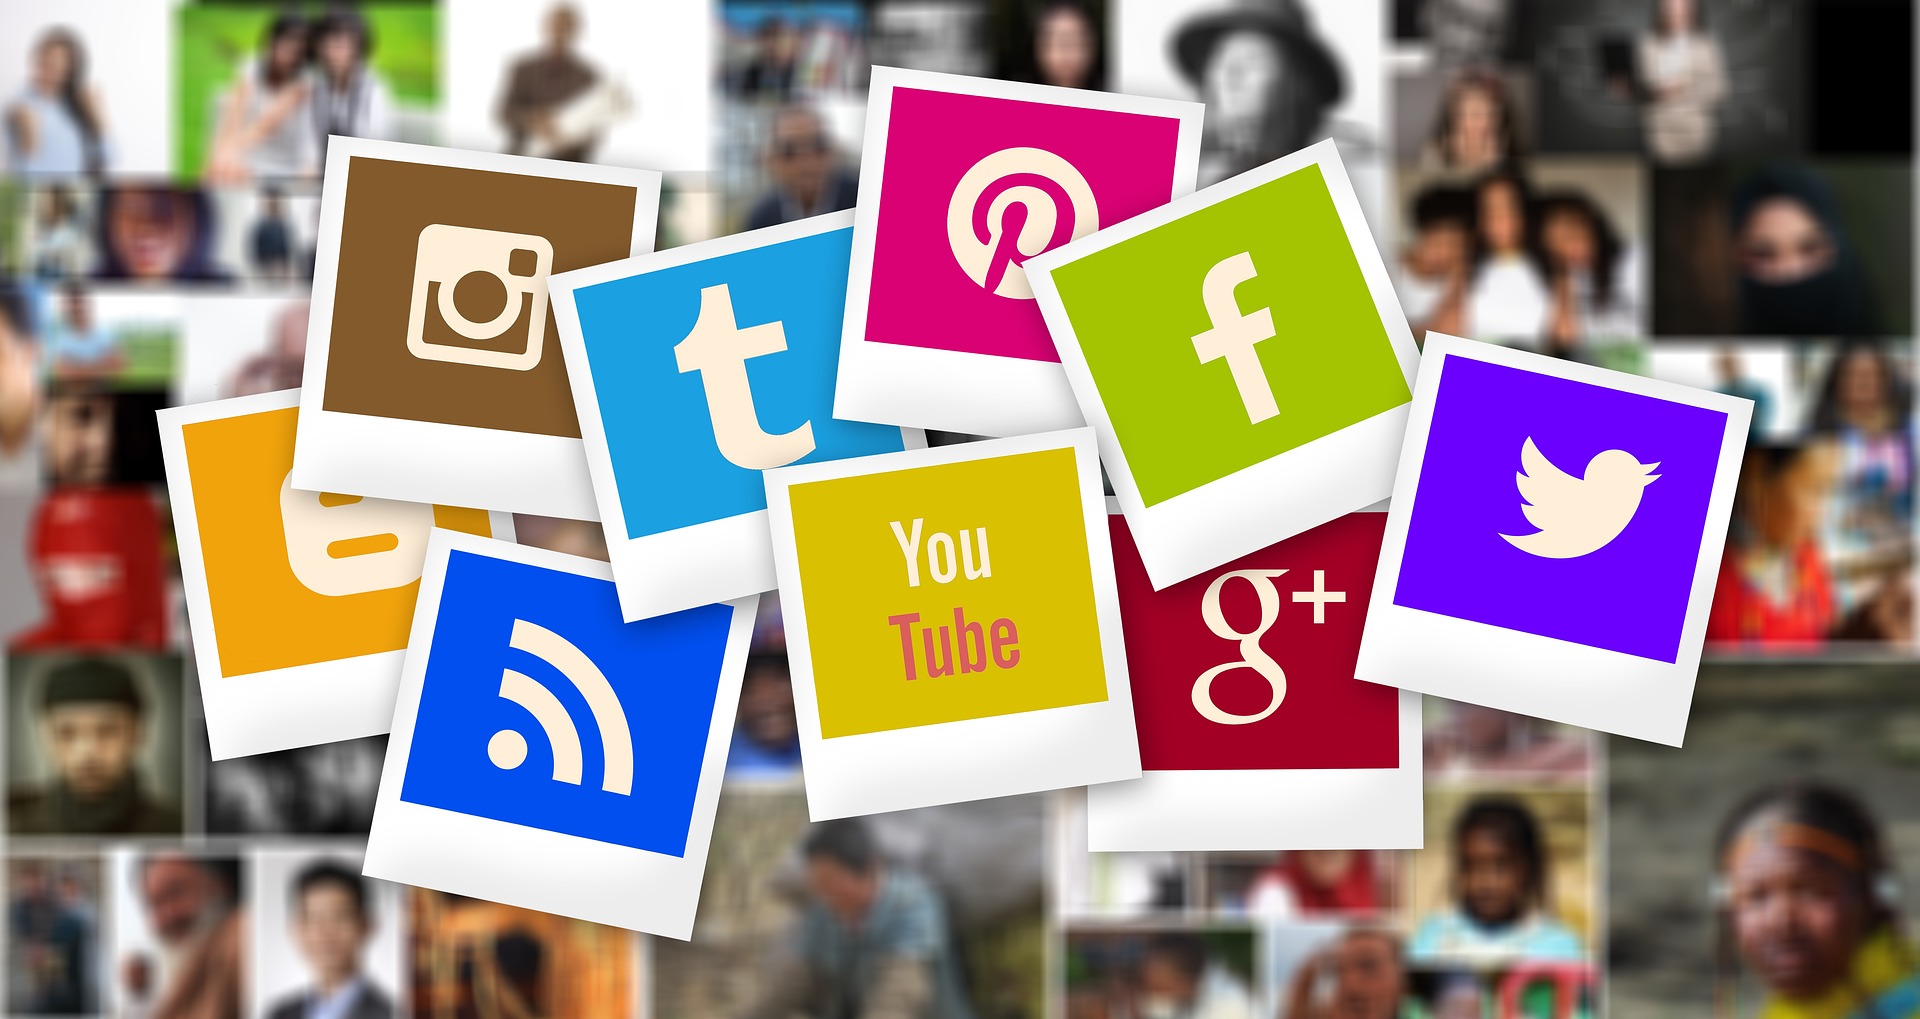 Photos polaroid colorées qui affichent les logos des différents réseaux sociaux existants